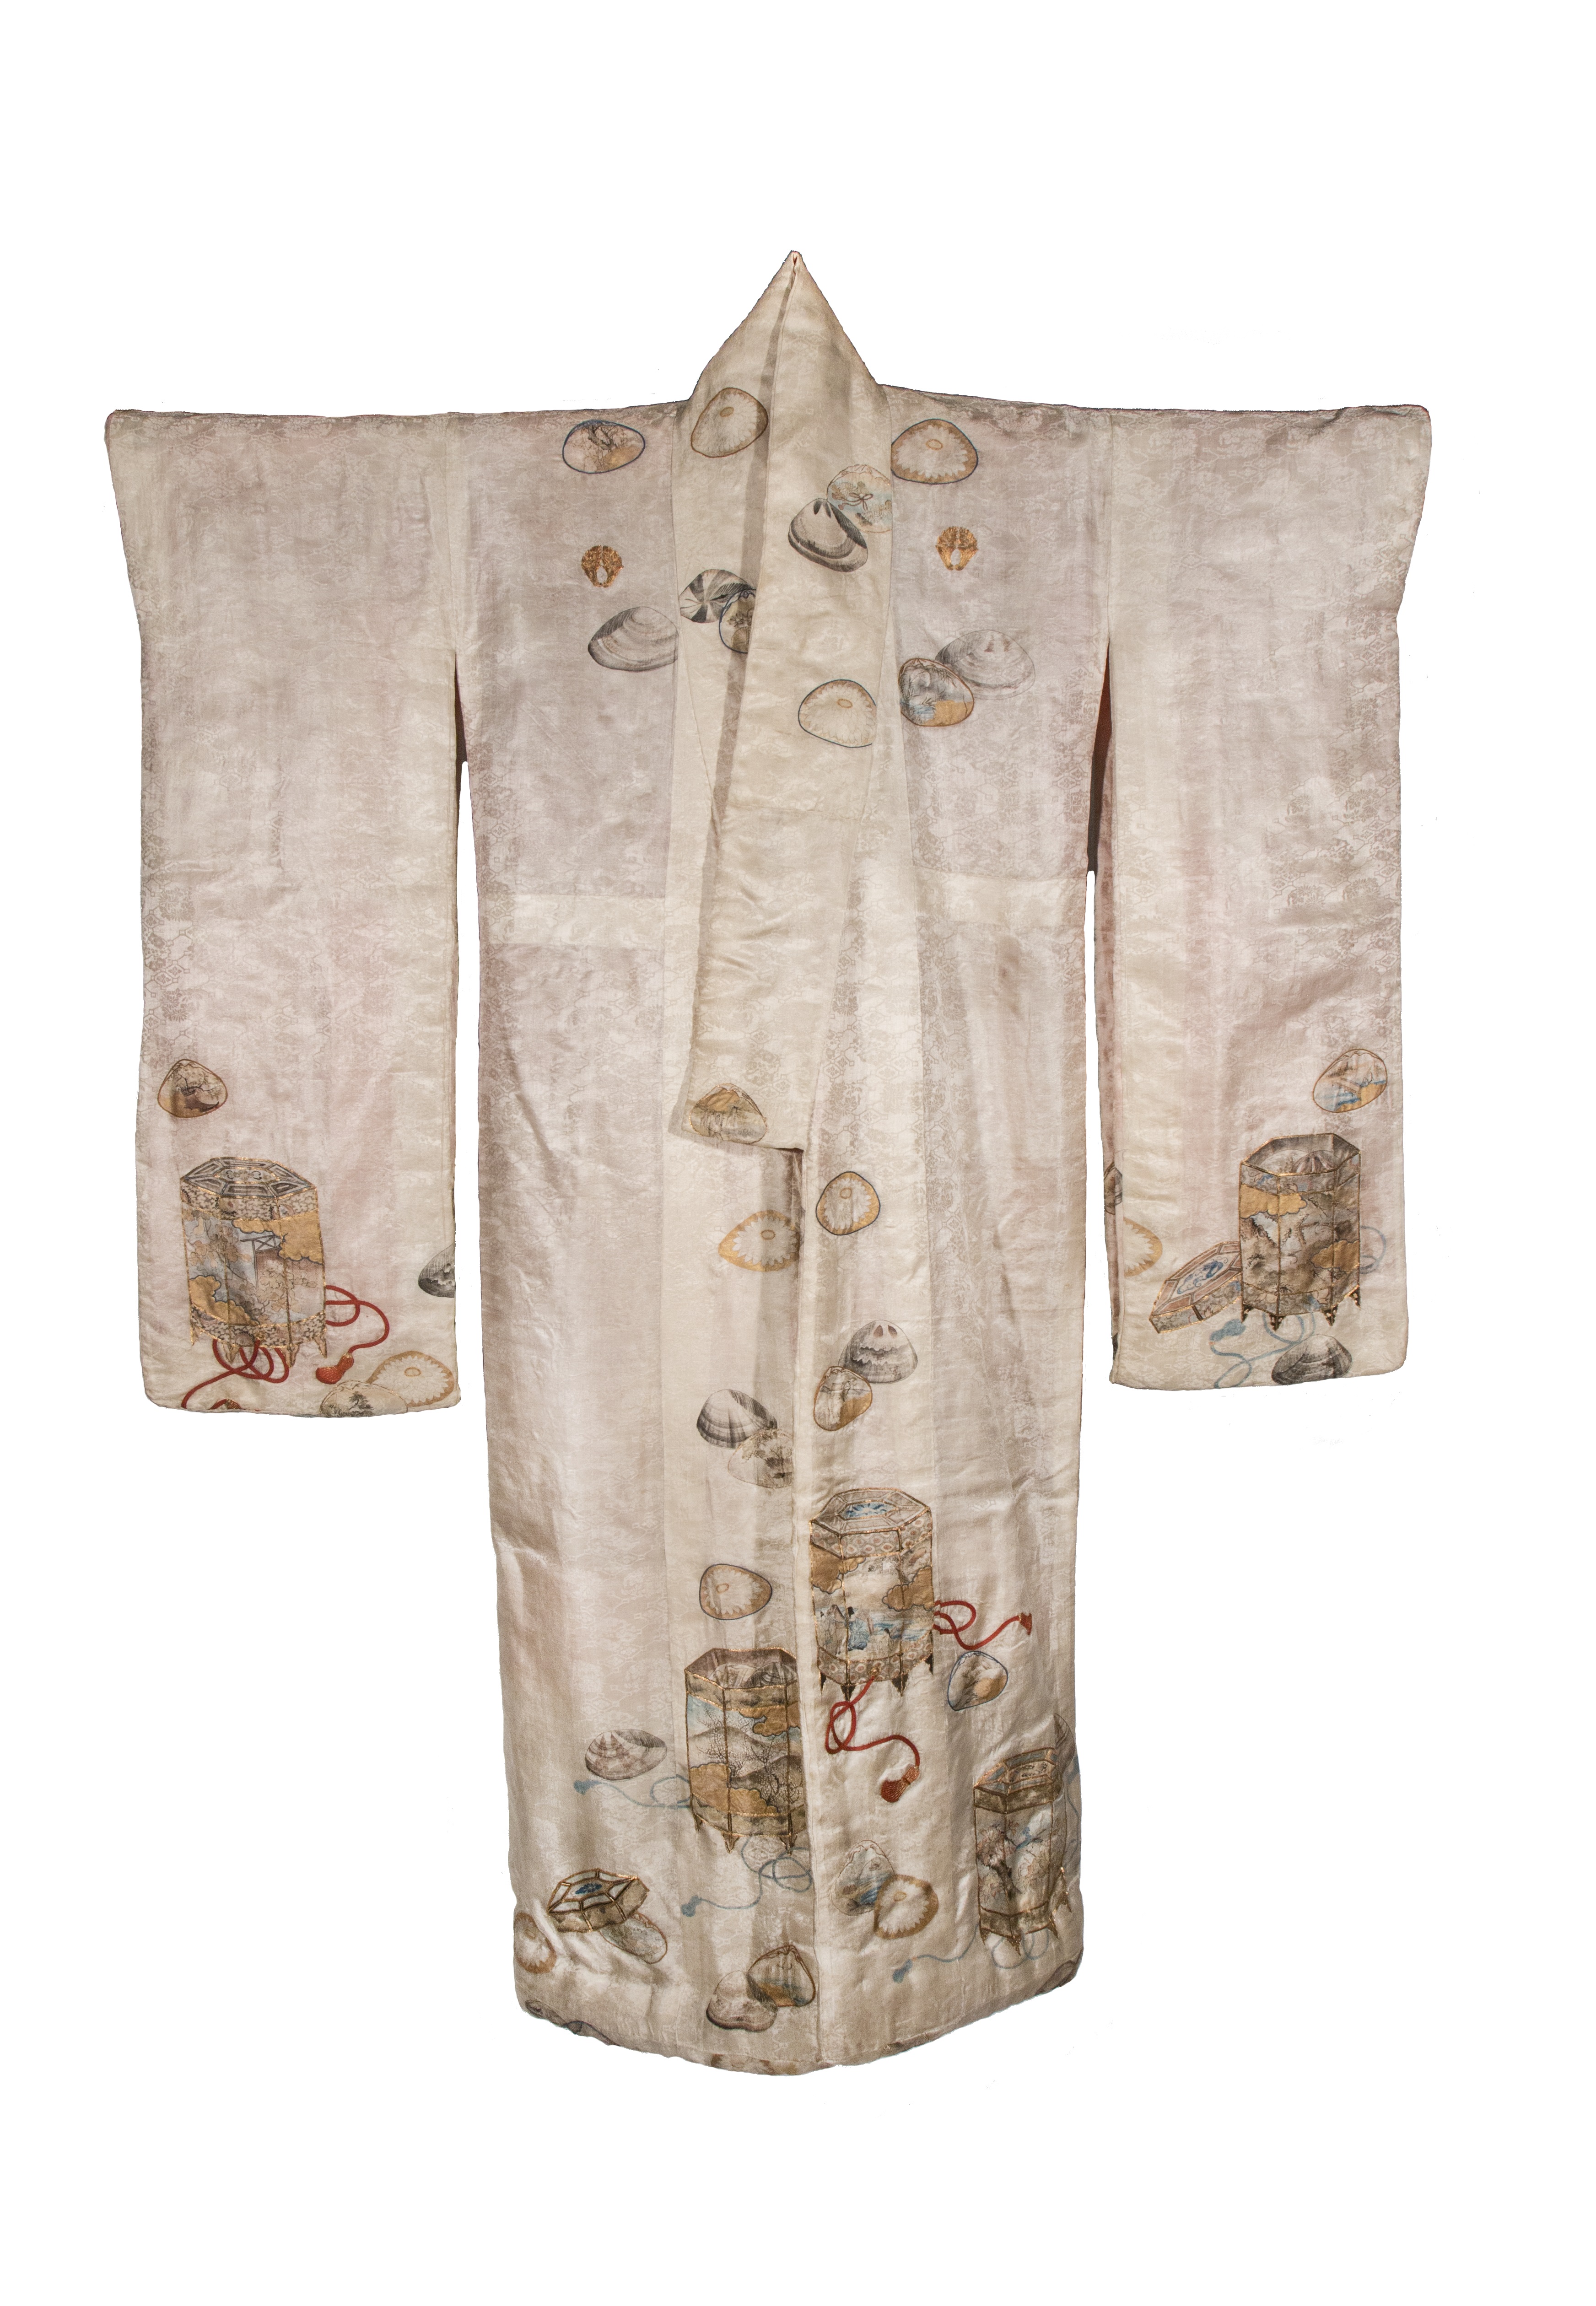 contenitori con conchiglie dipinte per il gioco delle conchiglie (abito femminile, elemento d'insieme) - ambito giapponese (seconda metà XIX)